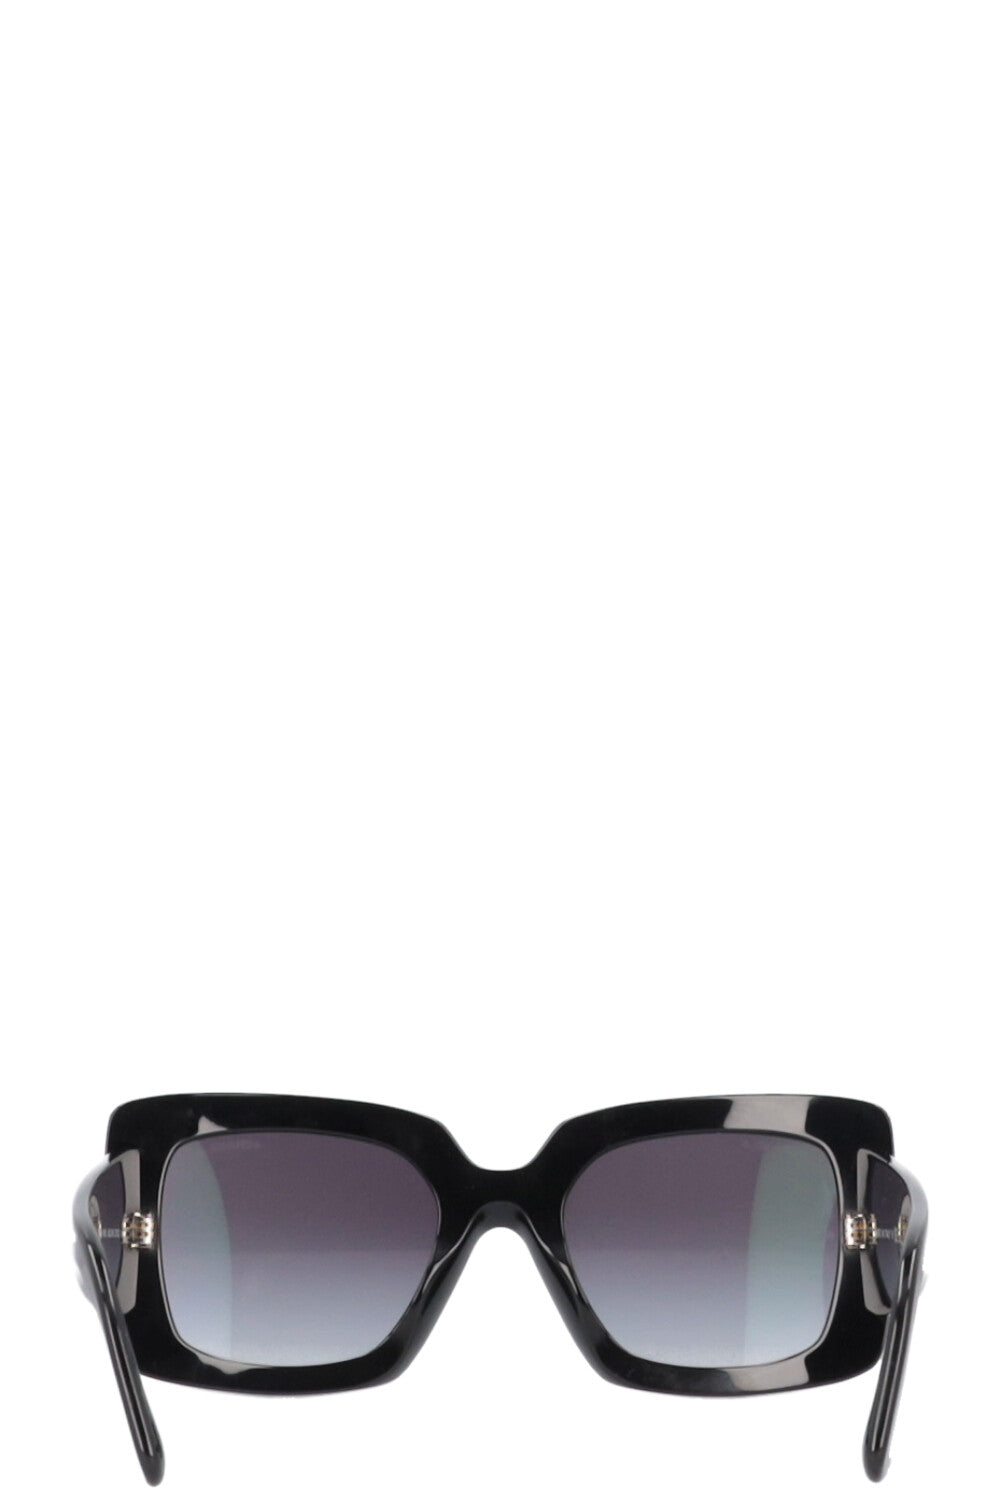 Chanel mirror sunglasses — REBOUND JUNKIE